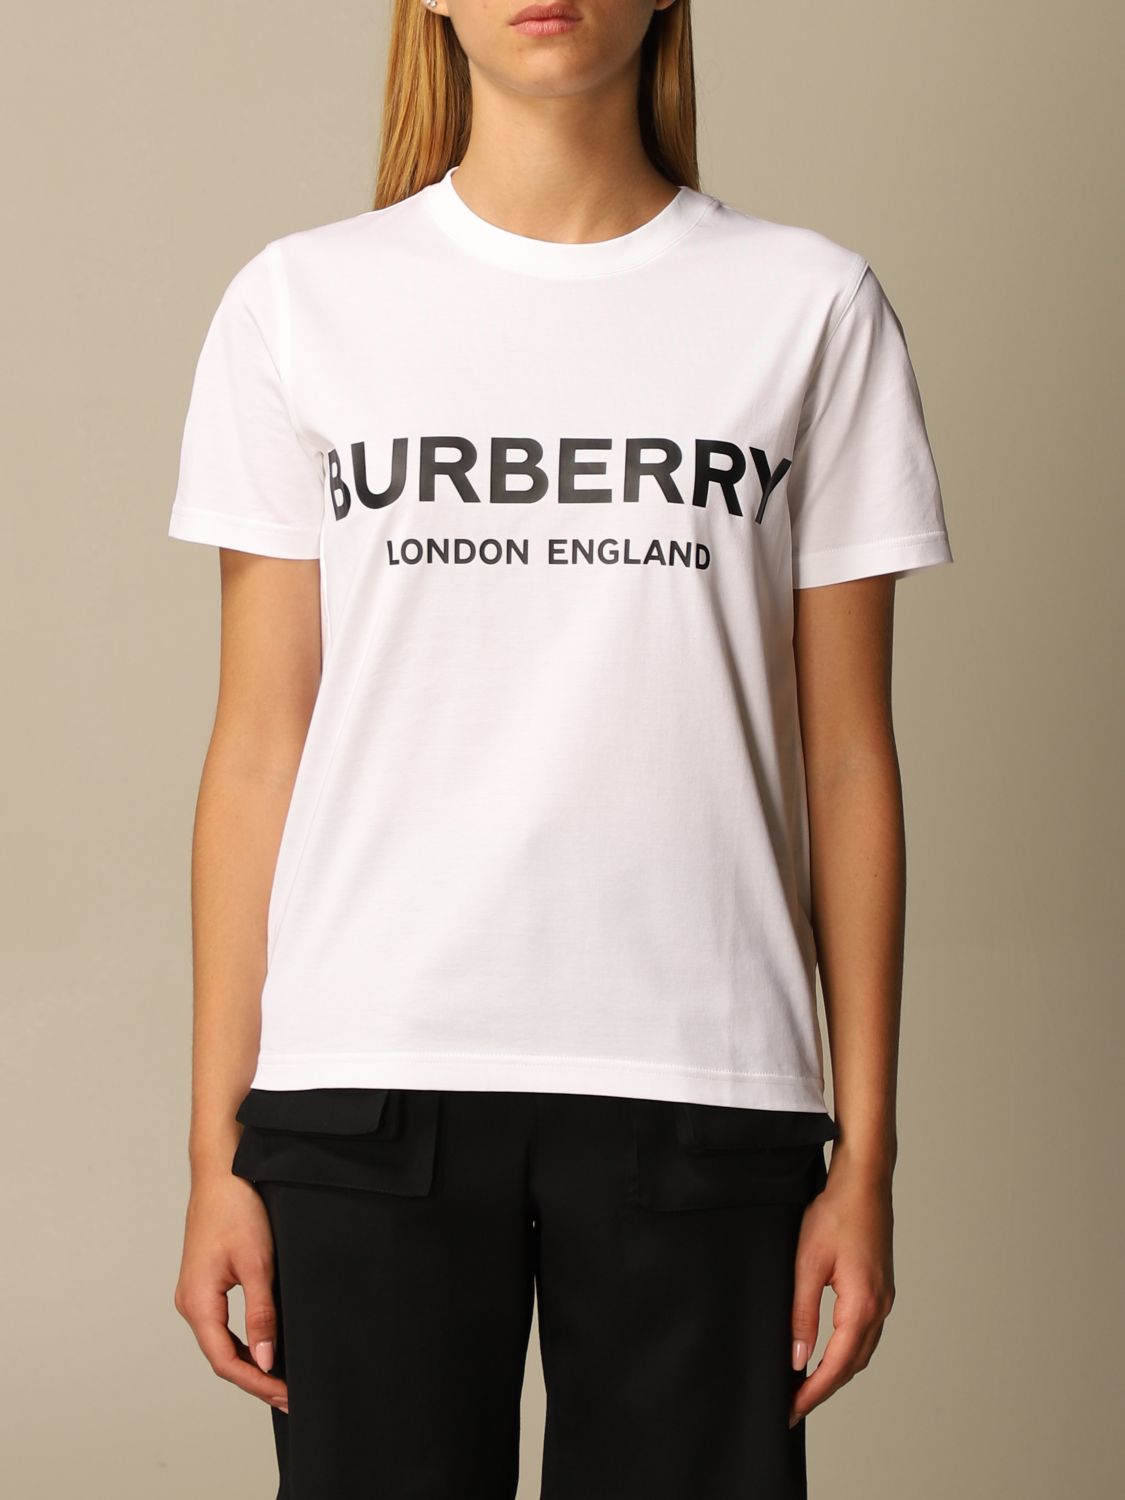 white burberry shirt women's